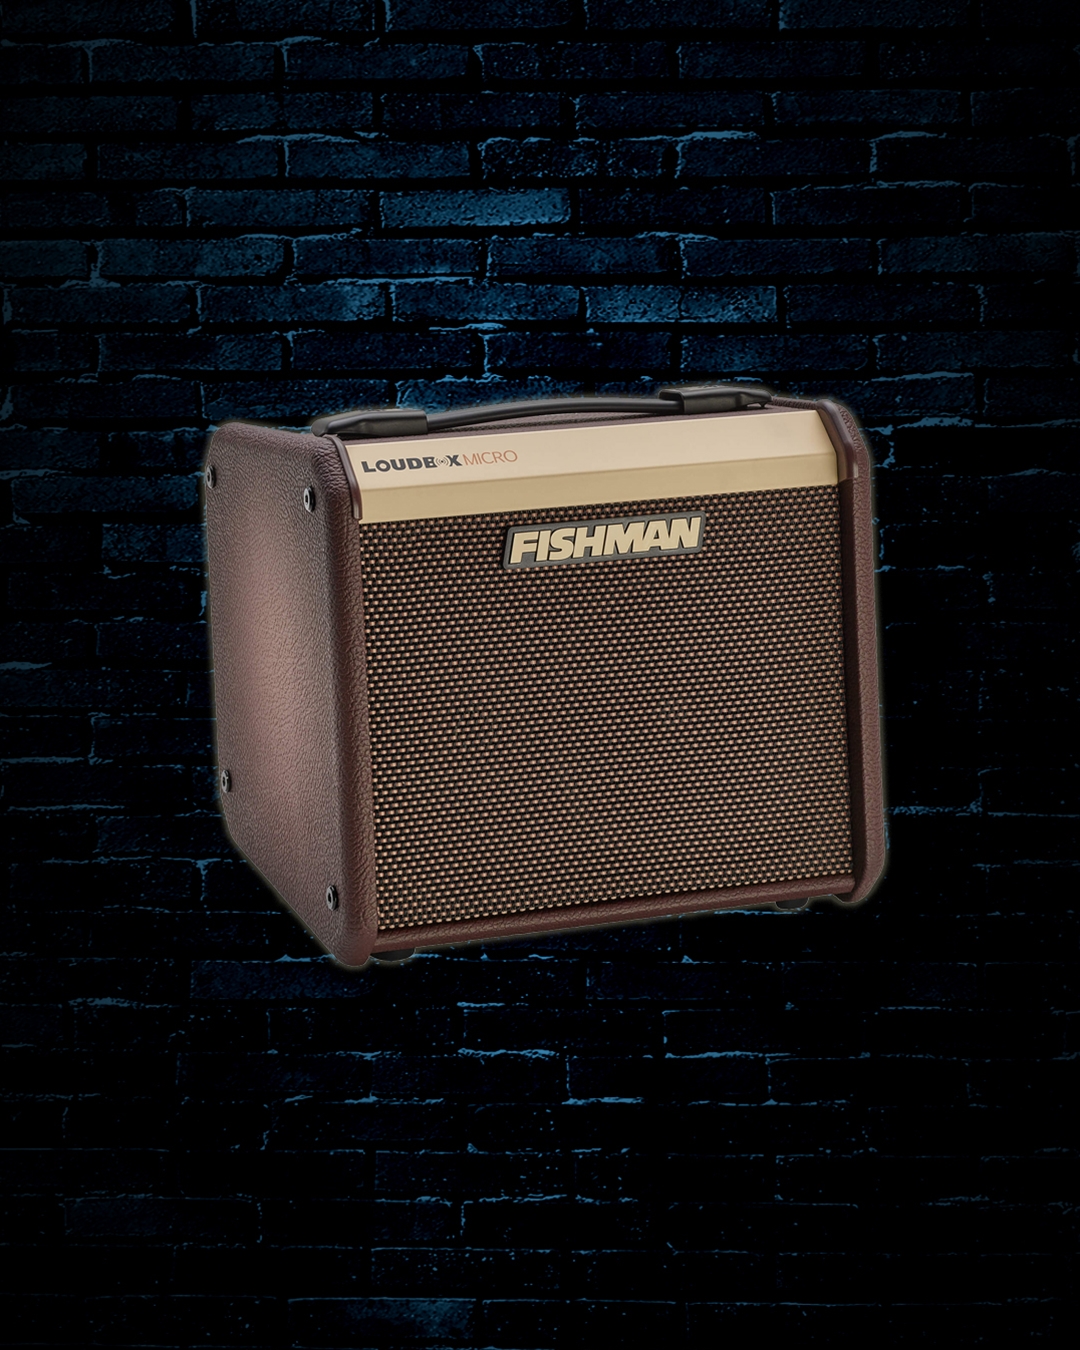 Fishman Loudbox Micro - 40 Watt 1x5.25